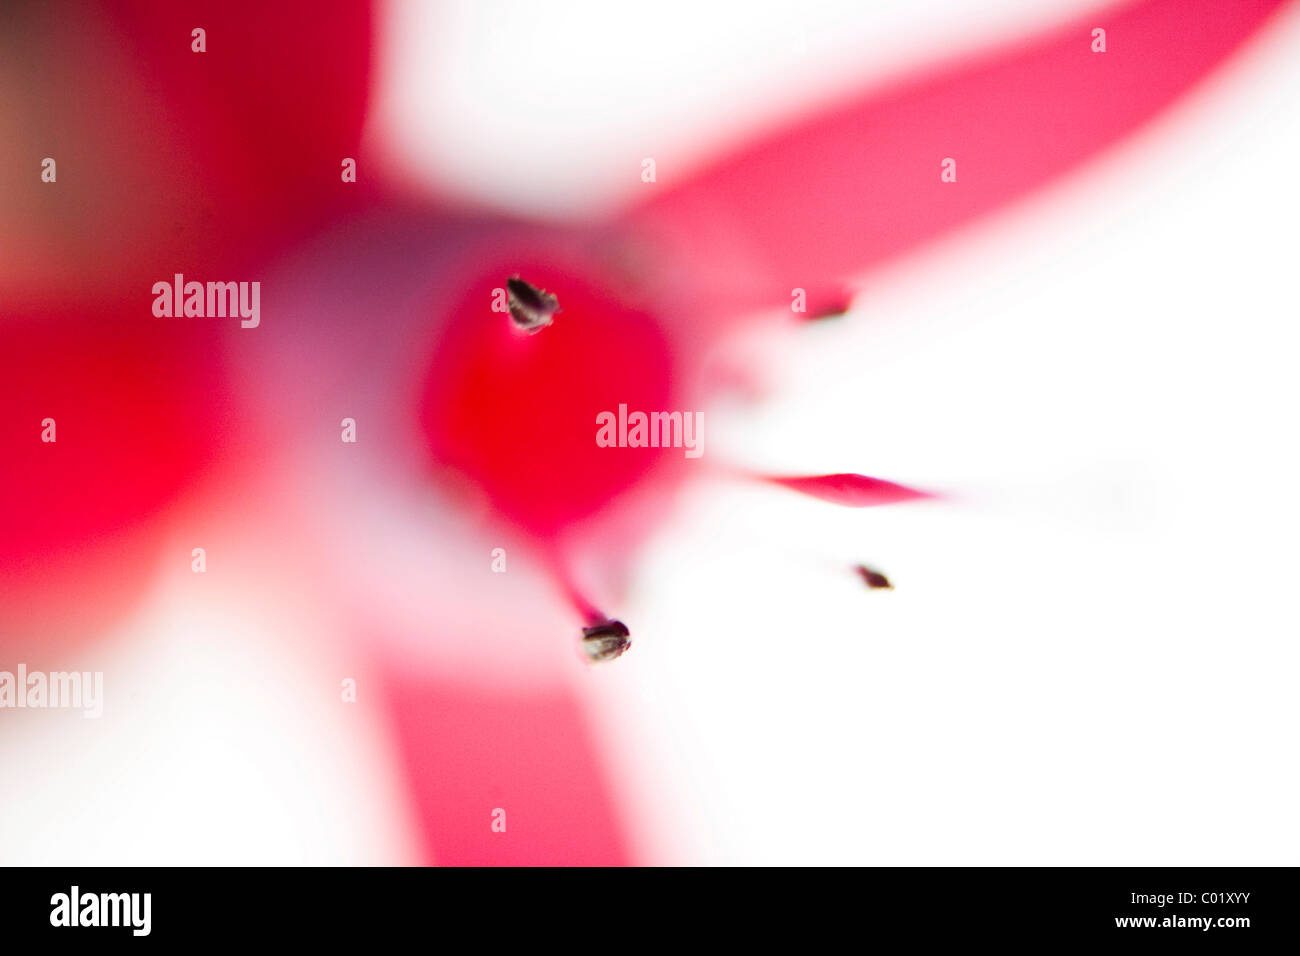 Bloom, fuchsia (Fuchsia), abstract Stock Photo